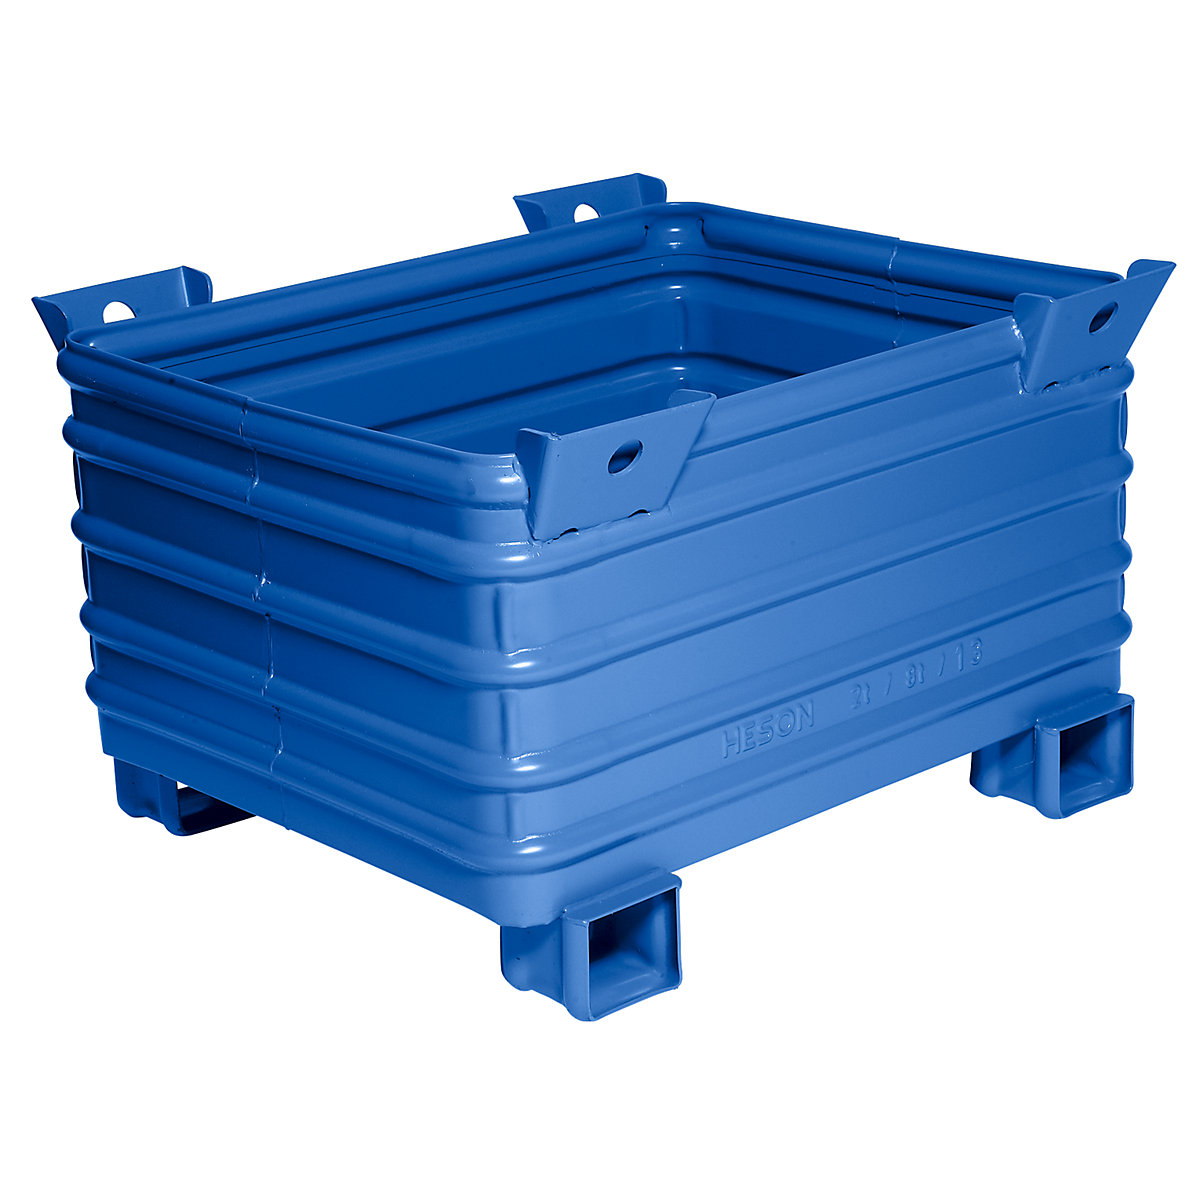 Stapelbak voor zware lasten – Heson, b x l = 800 x 1000 mm, met U-vormige poten, blauw gelakt, vanaf 1 stuk-7